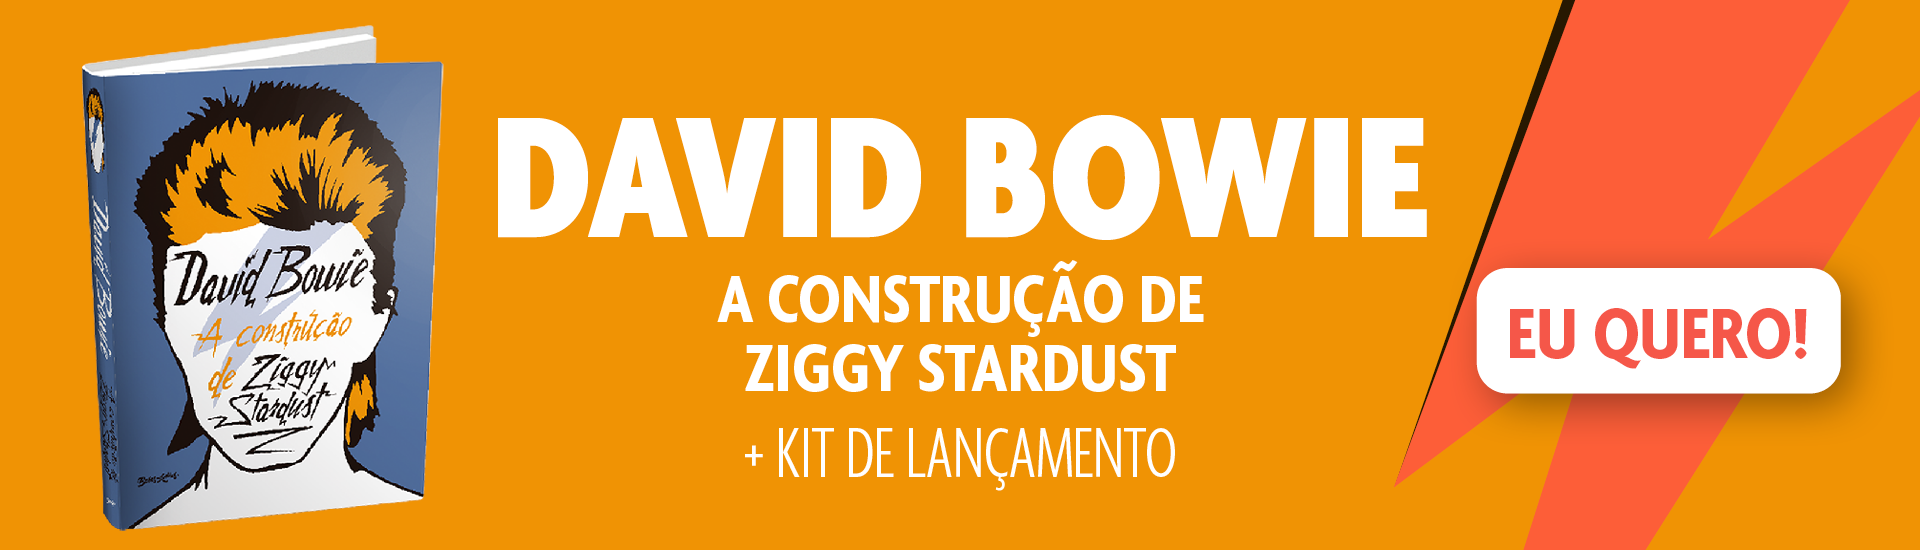 Banner David Bowie